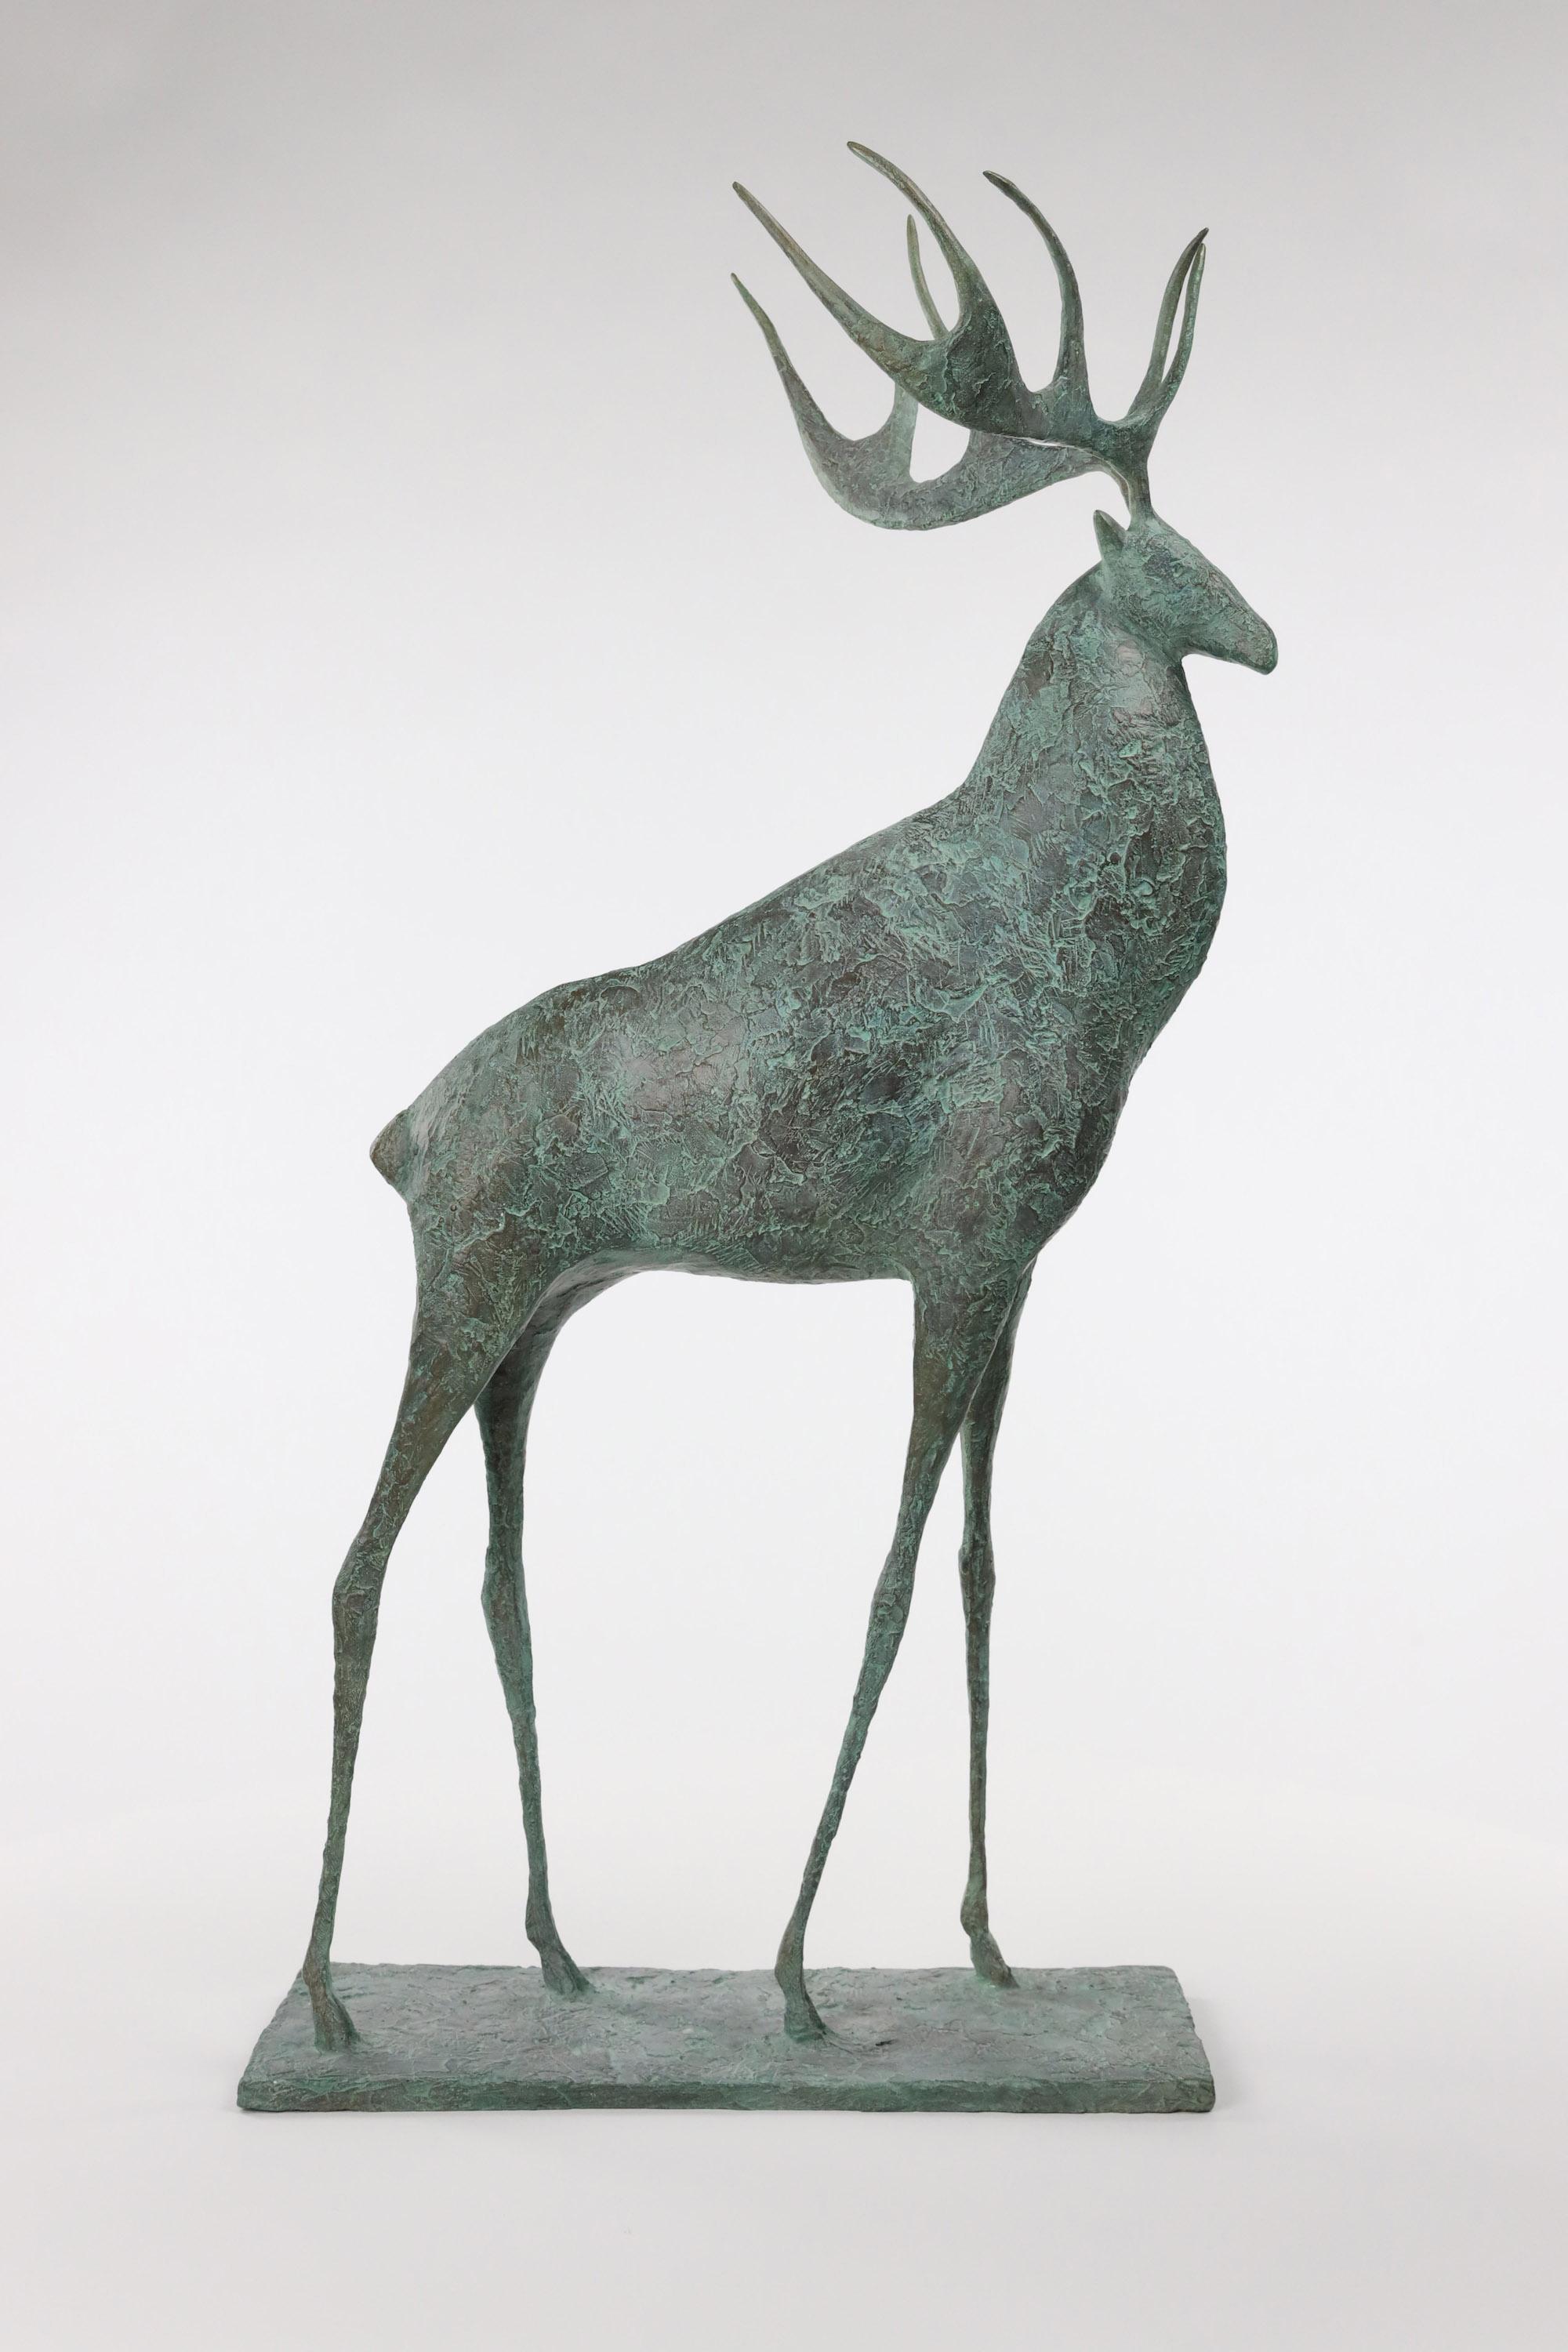 Hirsch II ist eine Bronzeskulptur des französischen zeitgenössischen Künstlers Pierre Yermia mit den Maßen 83 × 39 × 24 cm (32,7 × 15,4 × 9,4 in). Die Skulptur ist signiert und nummeriert, gehört zu einer limitierten Auflage von 8 Exemplaren + 4